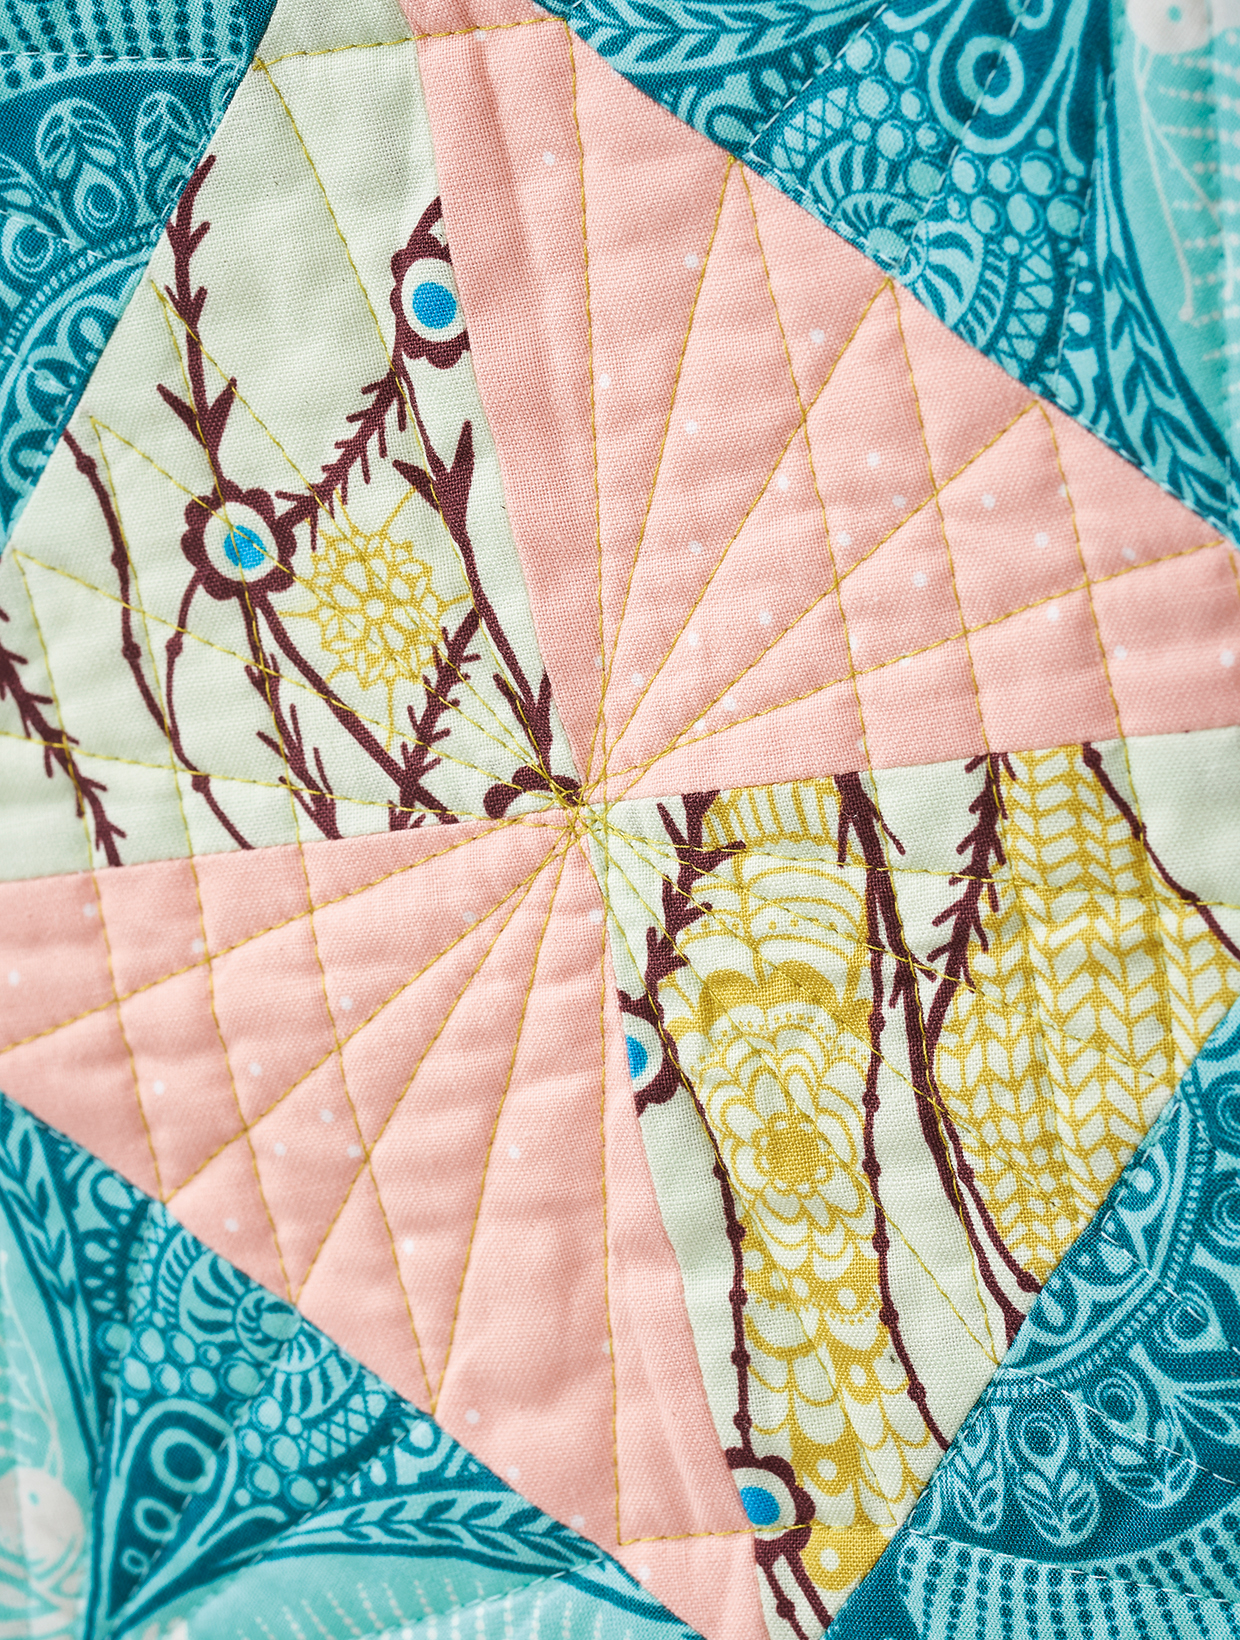 Geometric mini quilt pattern detail